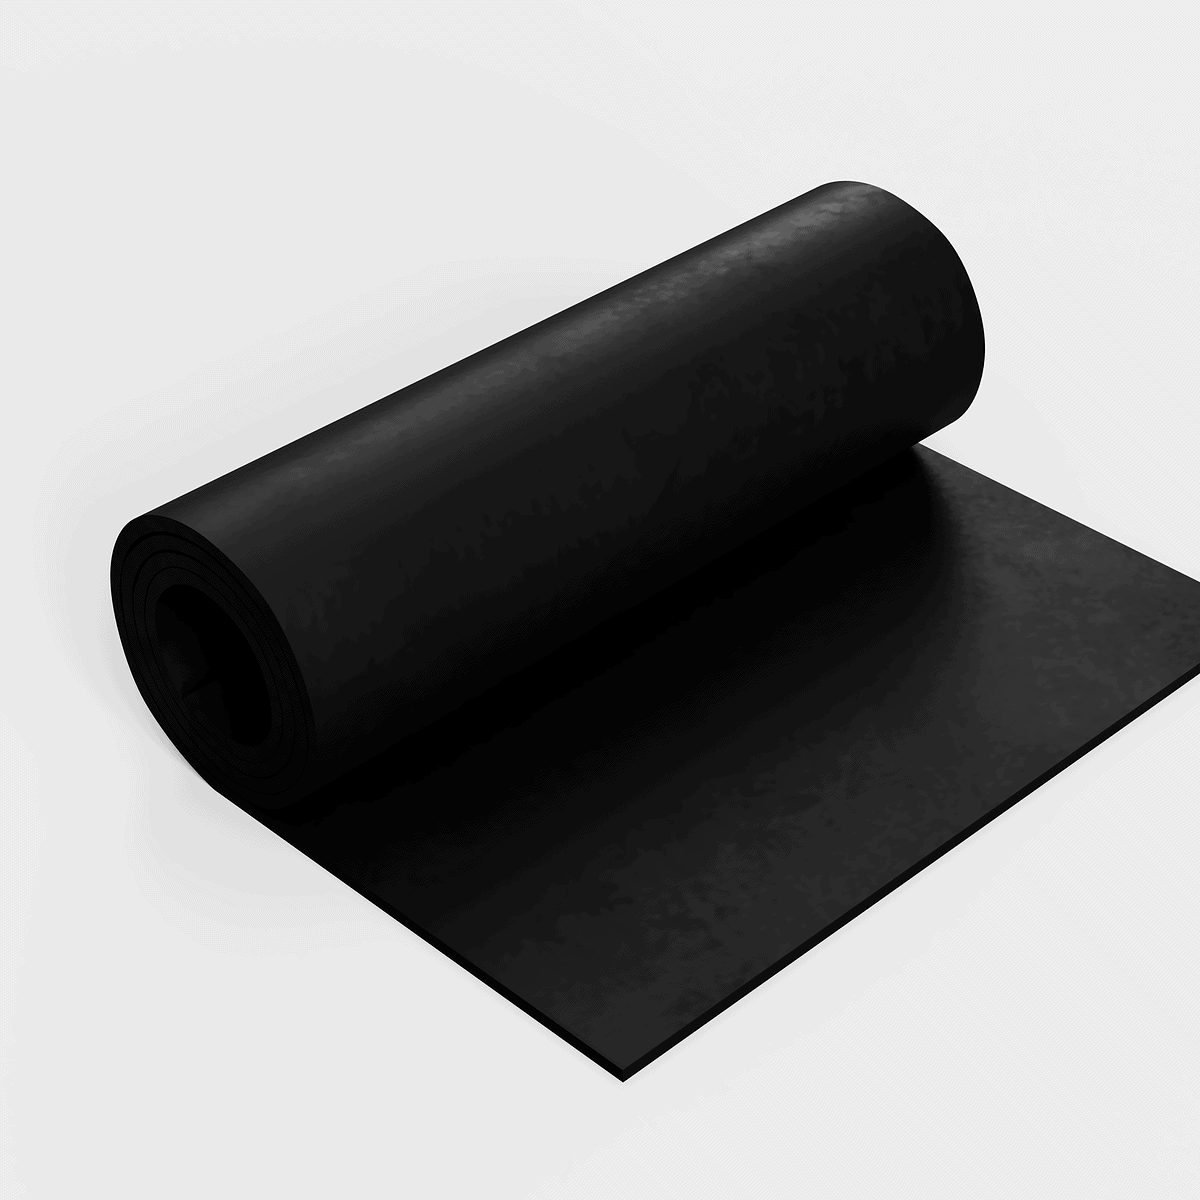 Porous rubber black